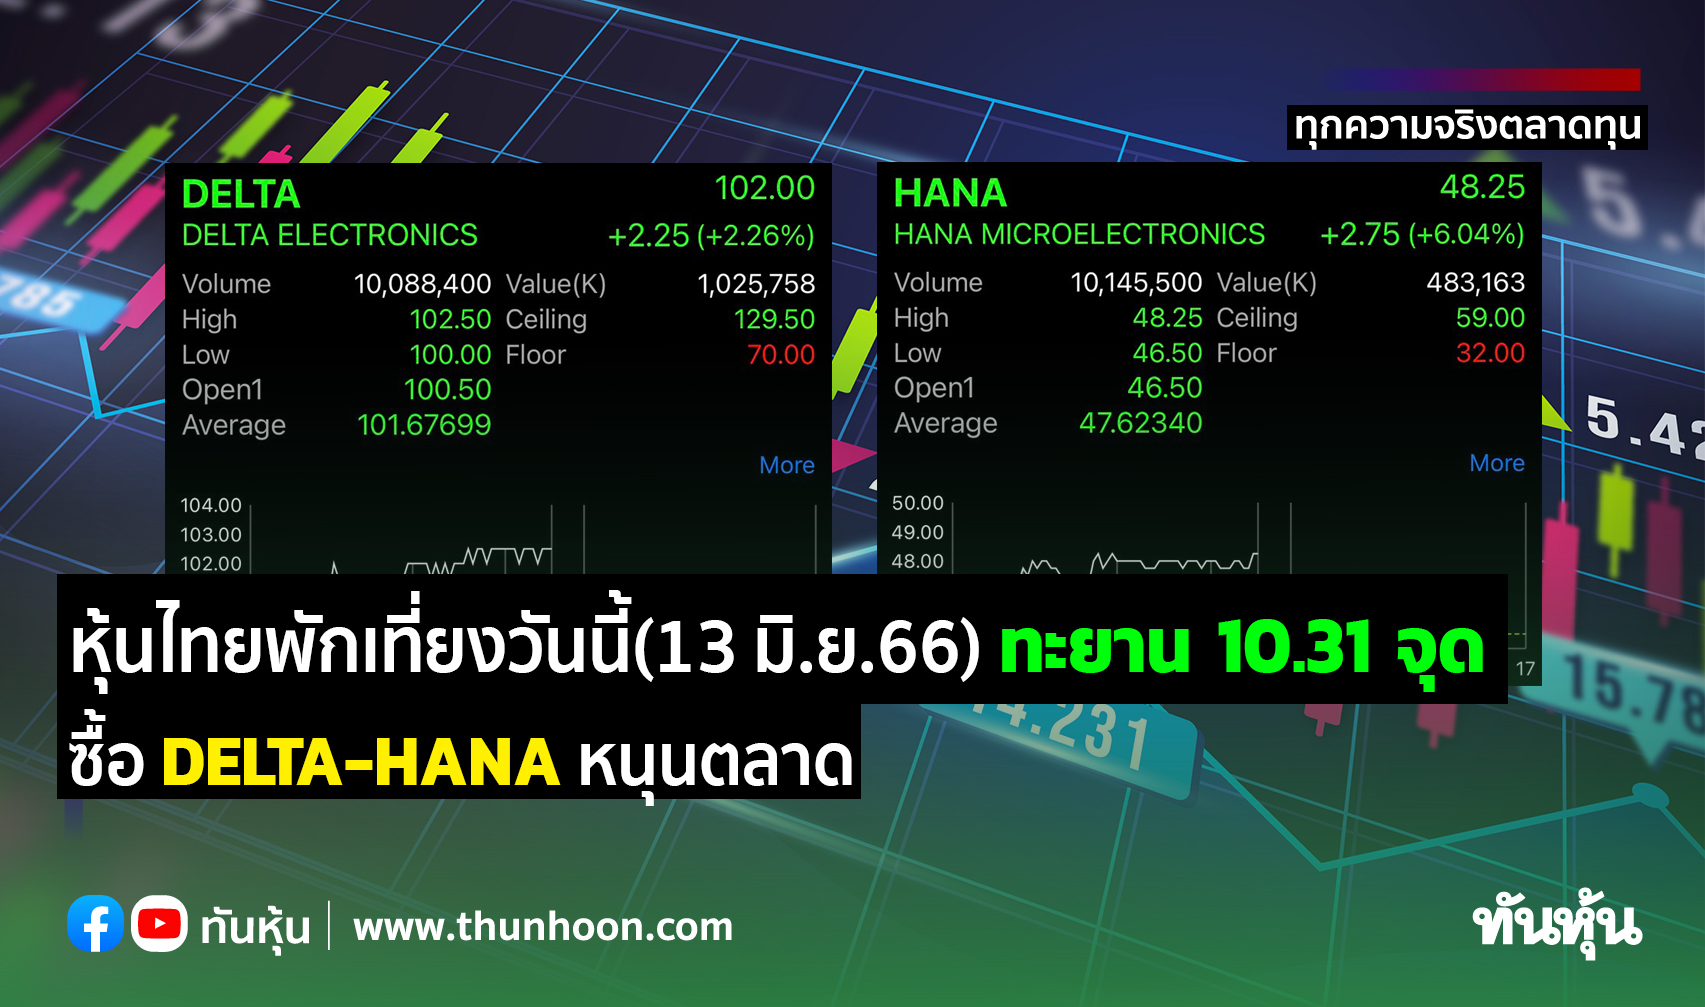 หุ้นไทยพักเที่ยงวันนี้(13 มิ.ย.66) ทะยาน 10.31 จุด ซื้อ Delta-Hana หนุนตลาด  - Thunhoon